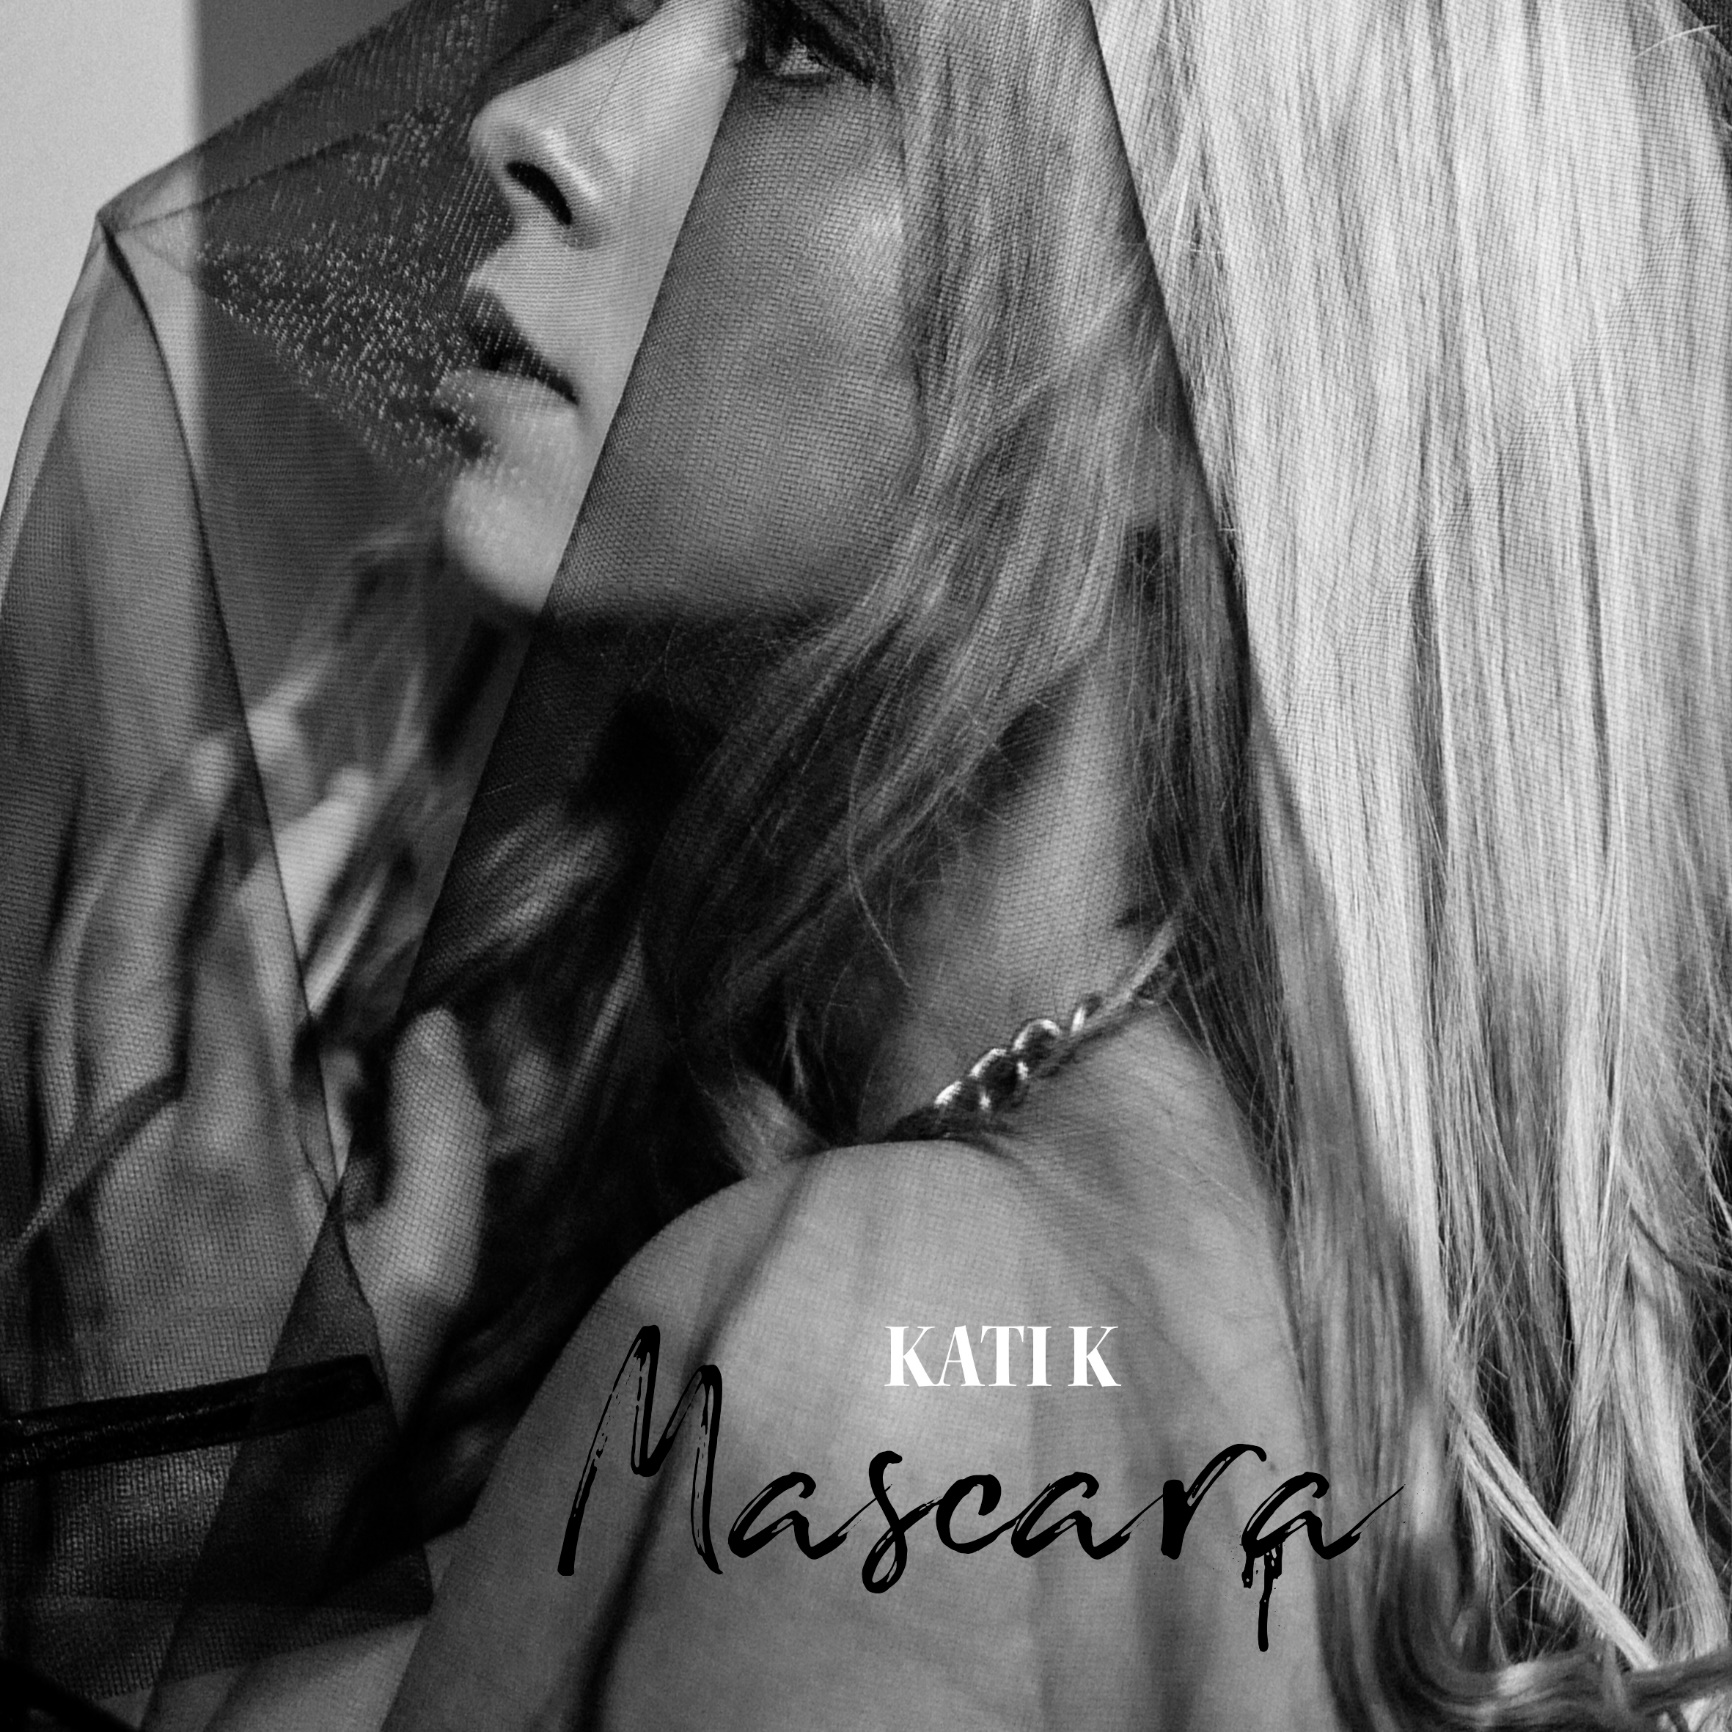 KATI K verarbeitet auf neuer Dark-Pop-Ballade das Thema Fremdgehen: Mascara